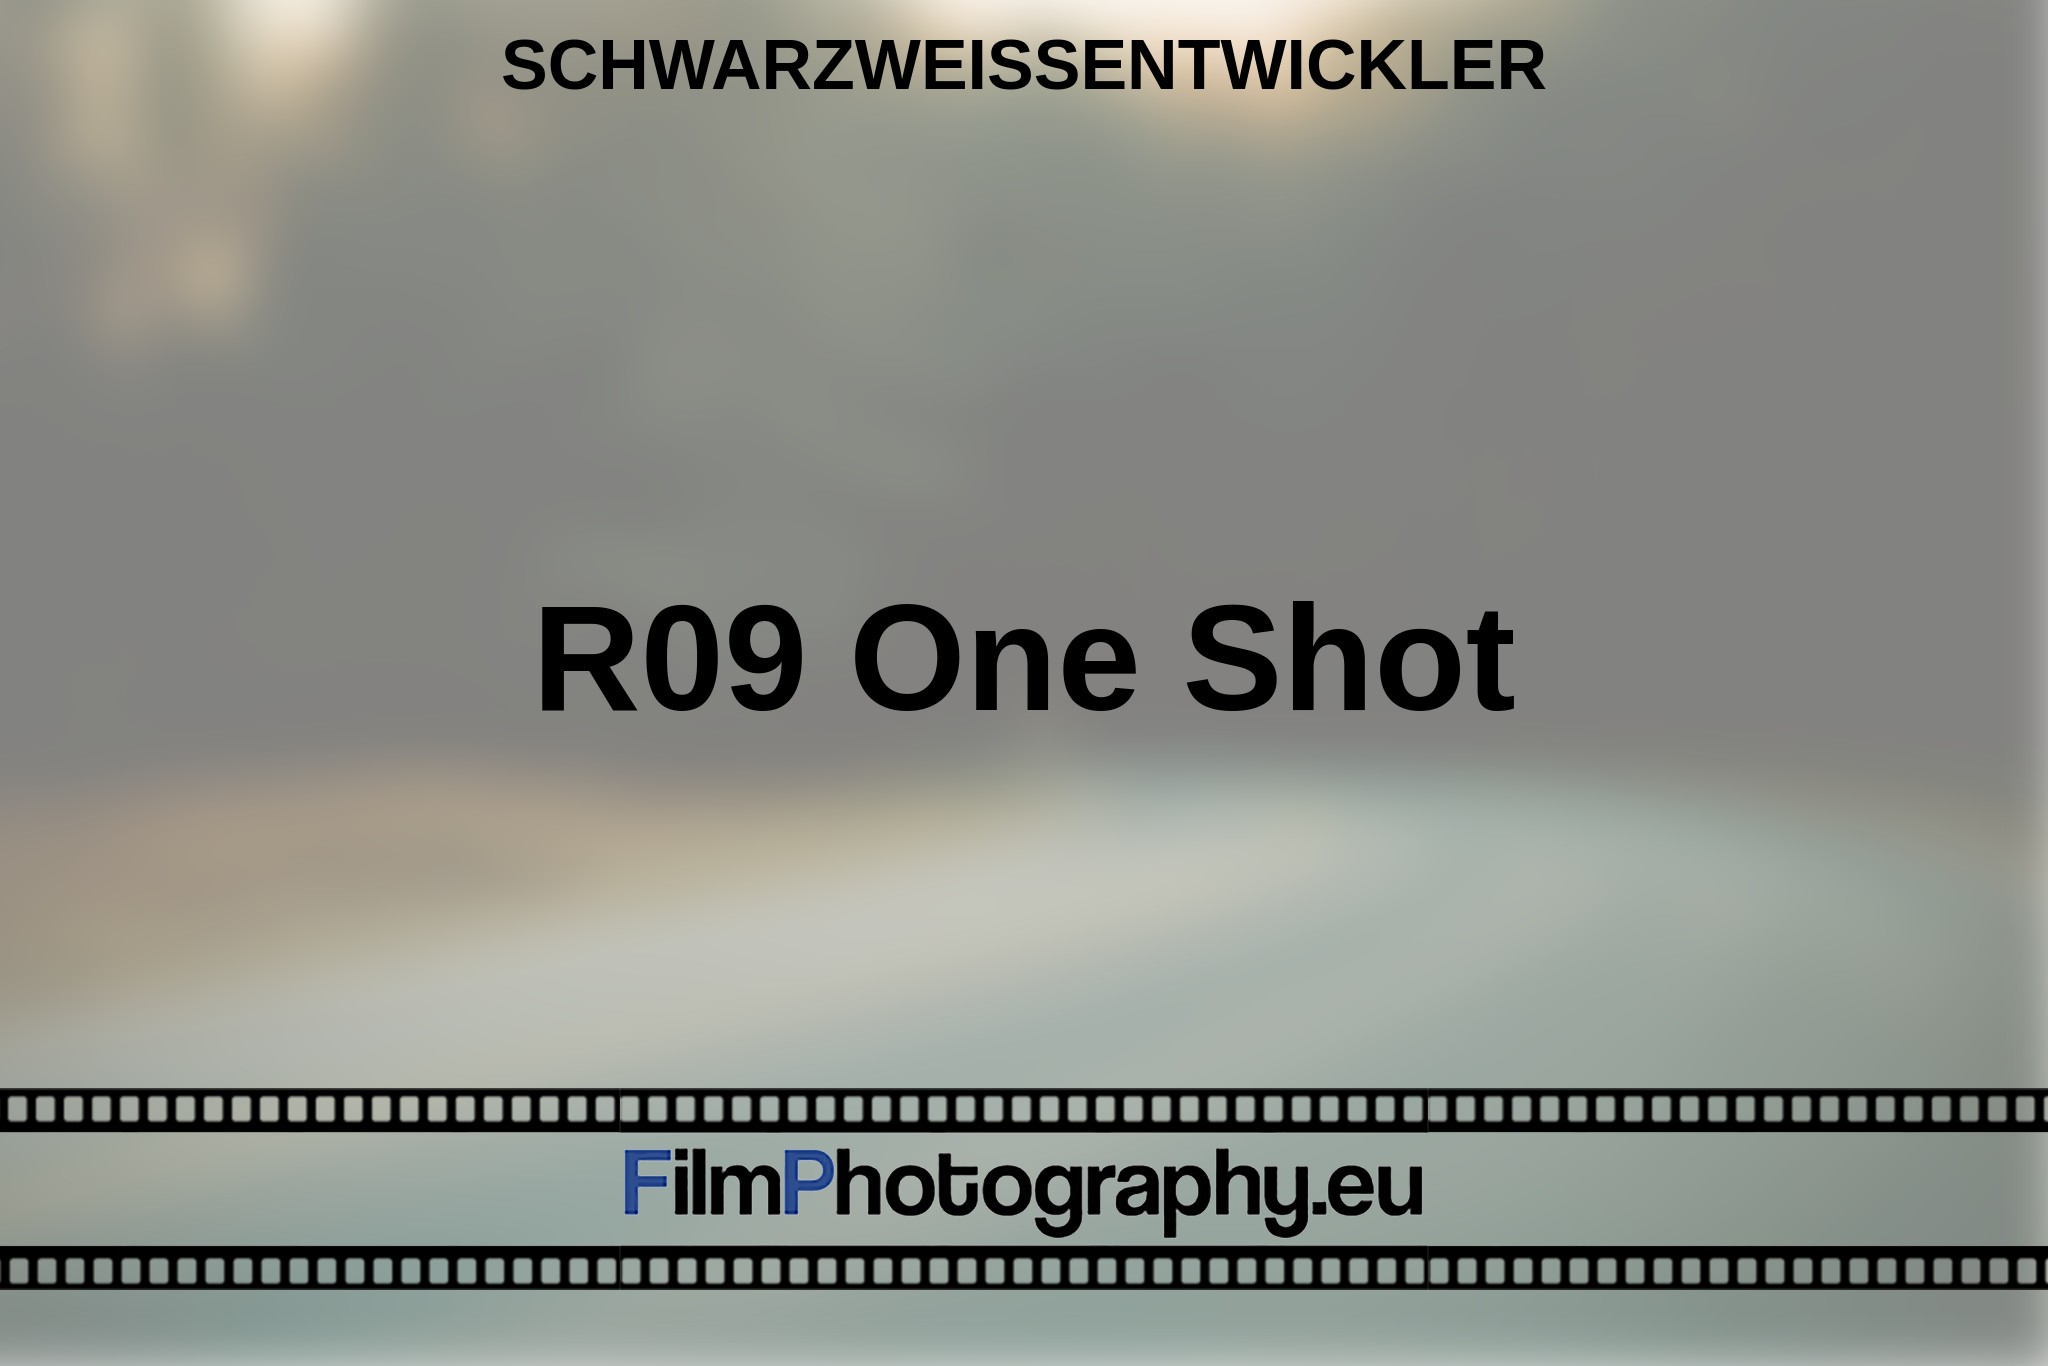 r09-one-shot-schwarzweißentwickler-bnv.jpg